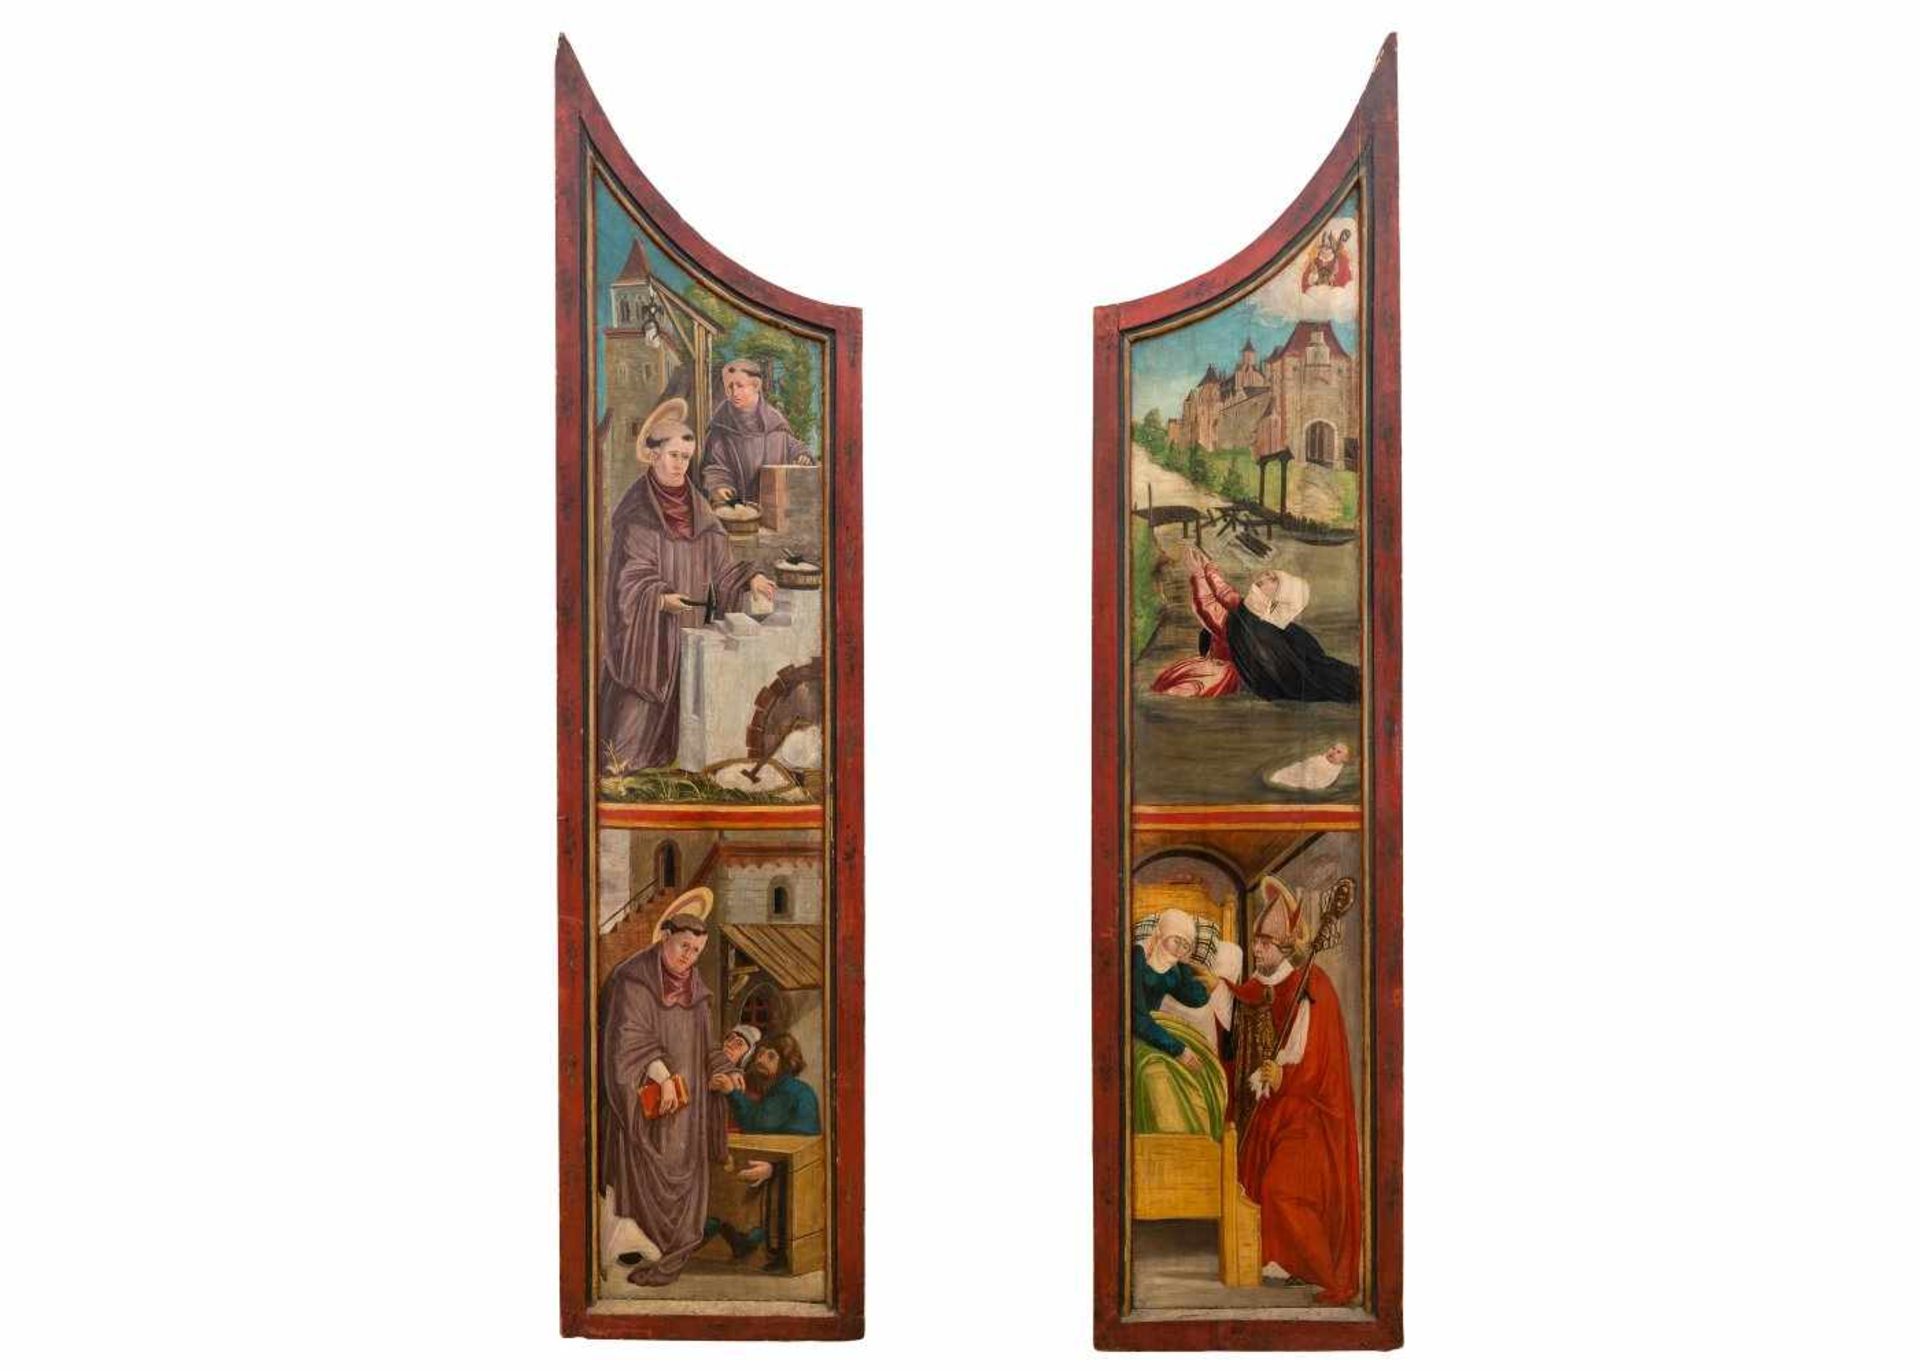 Zwei AltarflügelFranken, um 1500. Öl/Holz. Je ca. 212 x 49,5 cm. Rest., besch.Vier Darstellungen aus